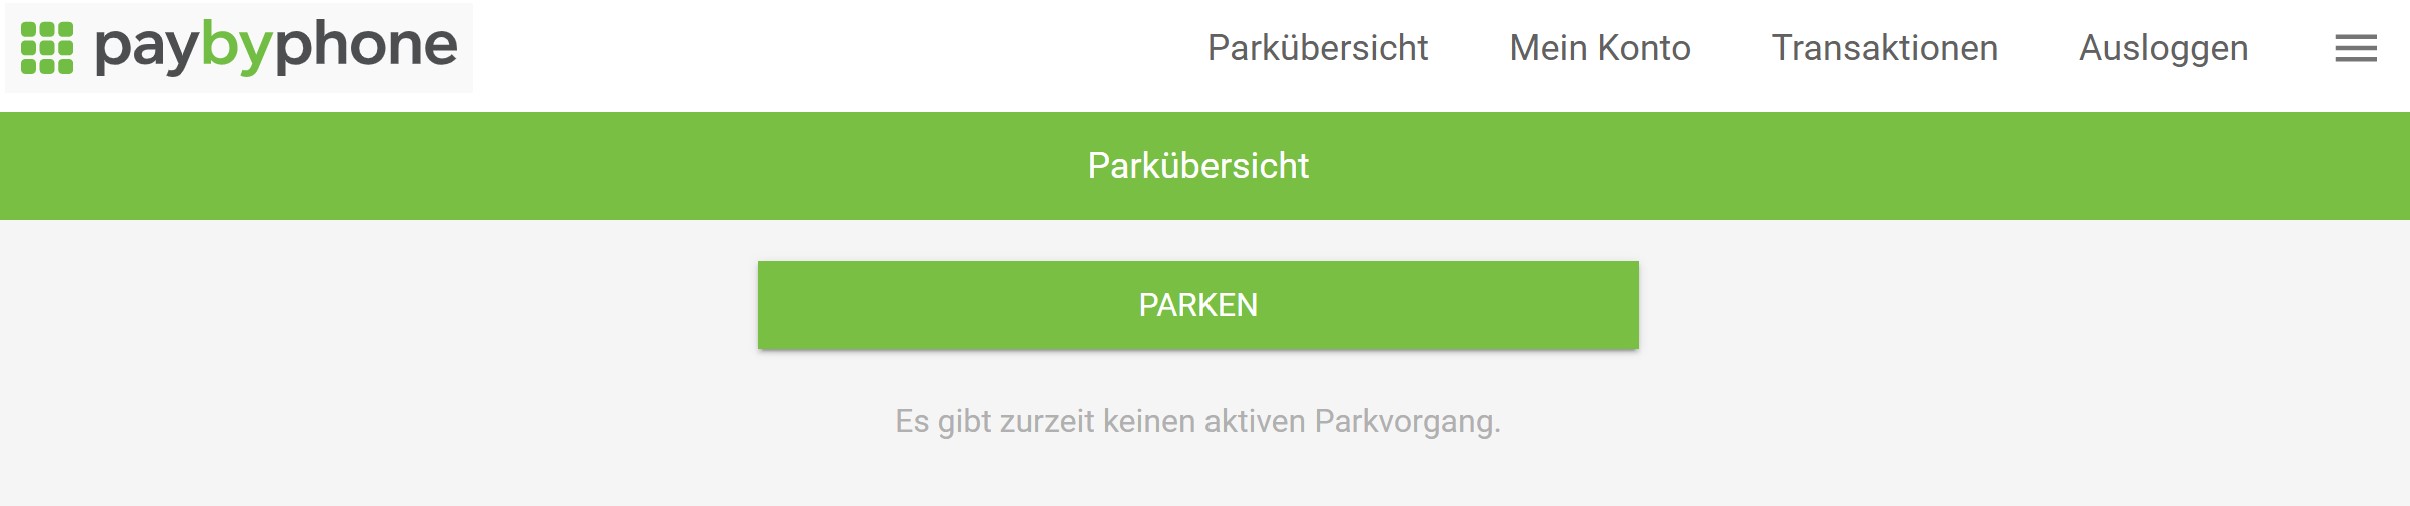 Webticket_Parken.jpg